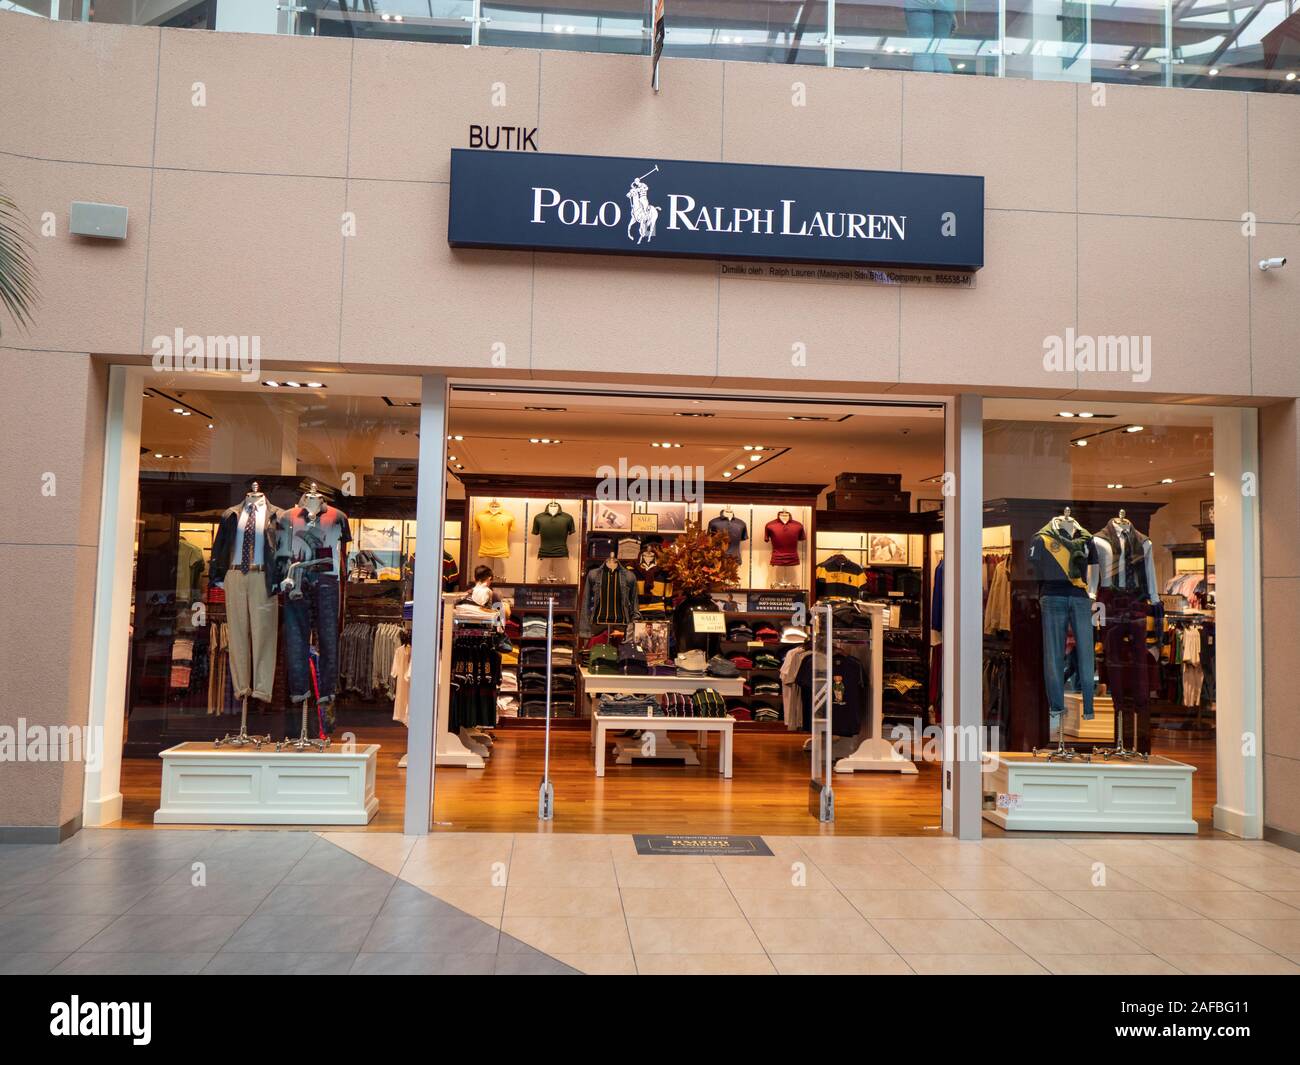 Entrance To a Polo Ralph Lauren Shop Editorial Stock Photo - Image